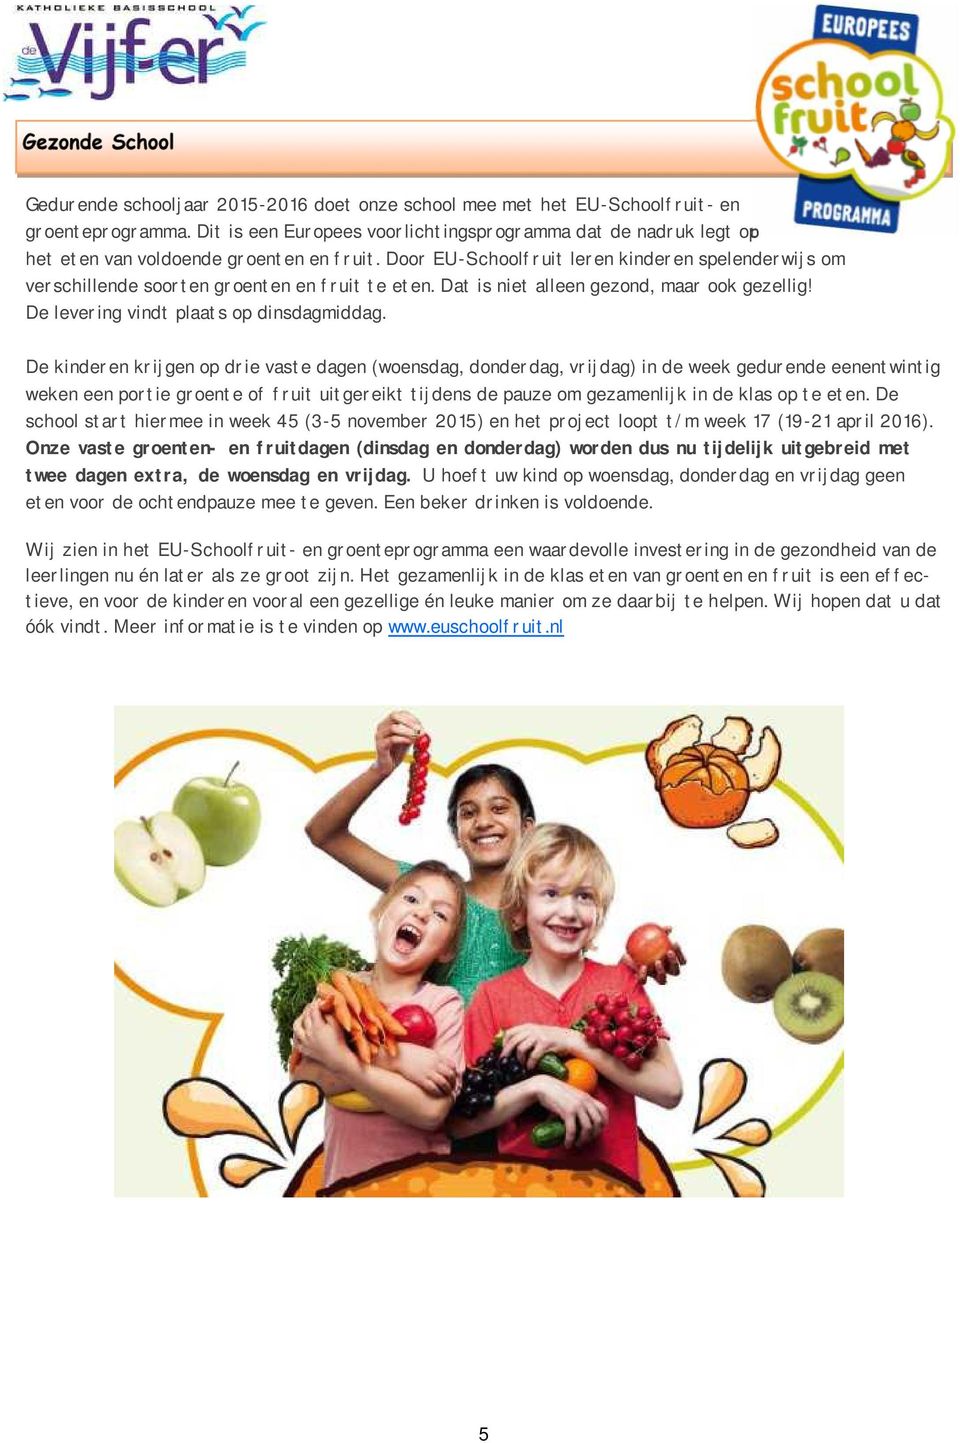 Door EU-Schoolfruit leren kinderen spelenderwijs om verschillende soorten groenten en fruit te eten. Dat is niet alleen gezond, maar ook gezellig! De levering vindt plaats op dinsdagmiddag.